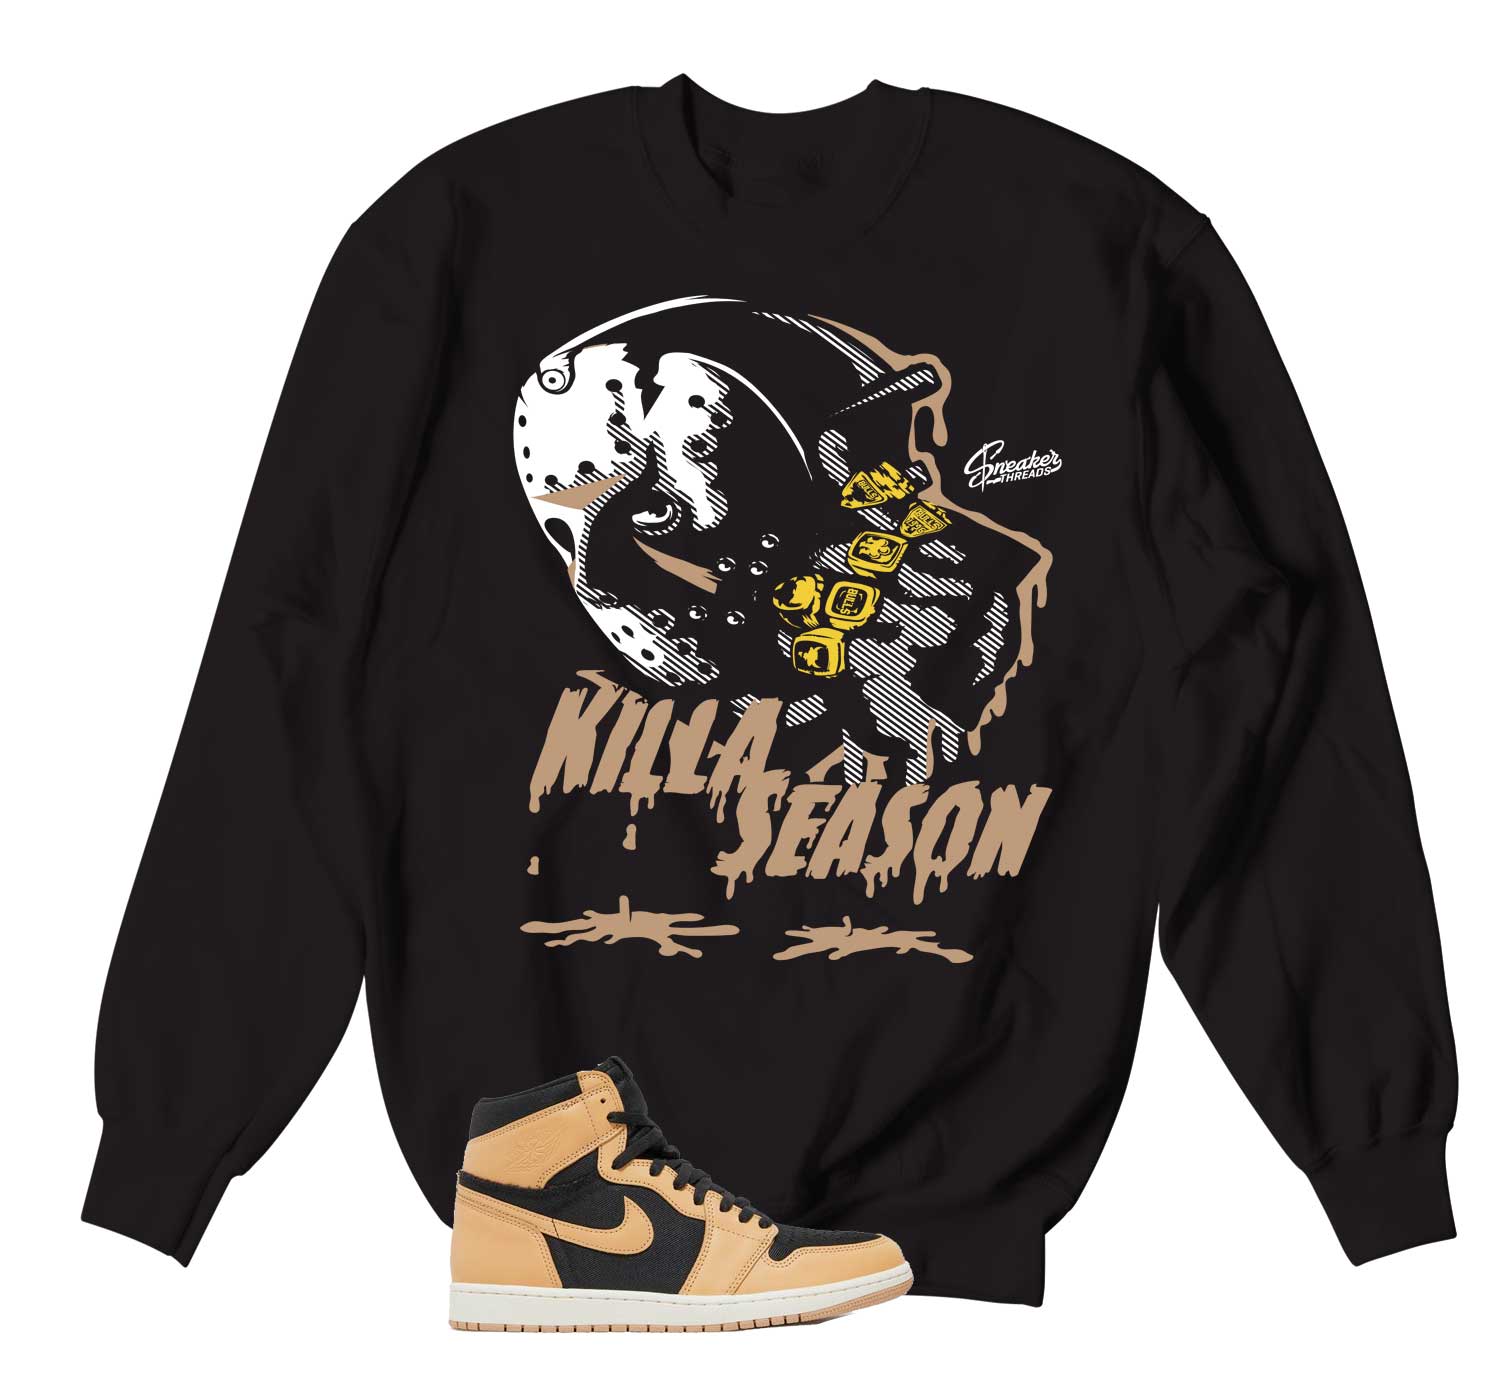 Retro 1 Heirloom Sweater - Killa Season - Black